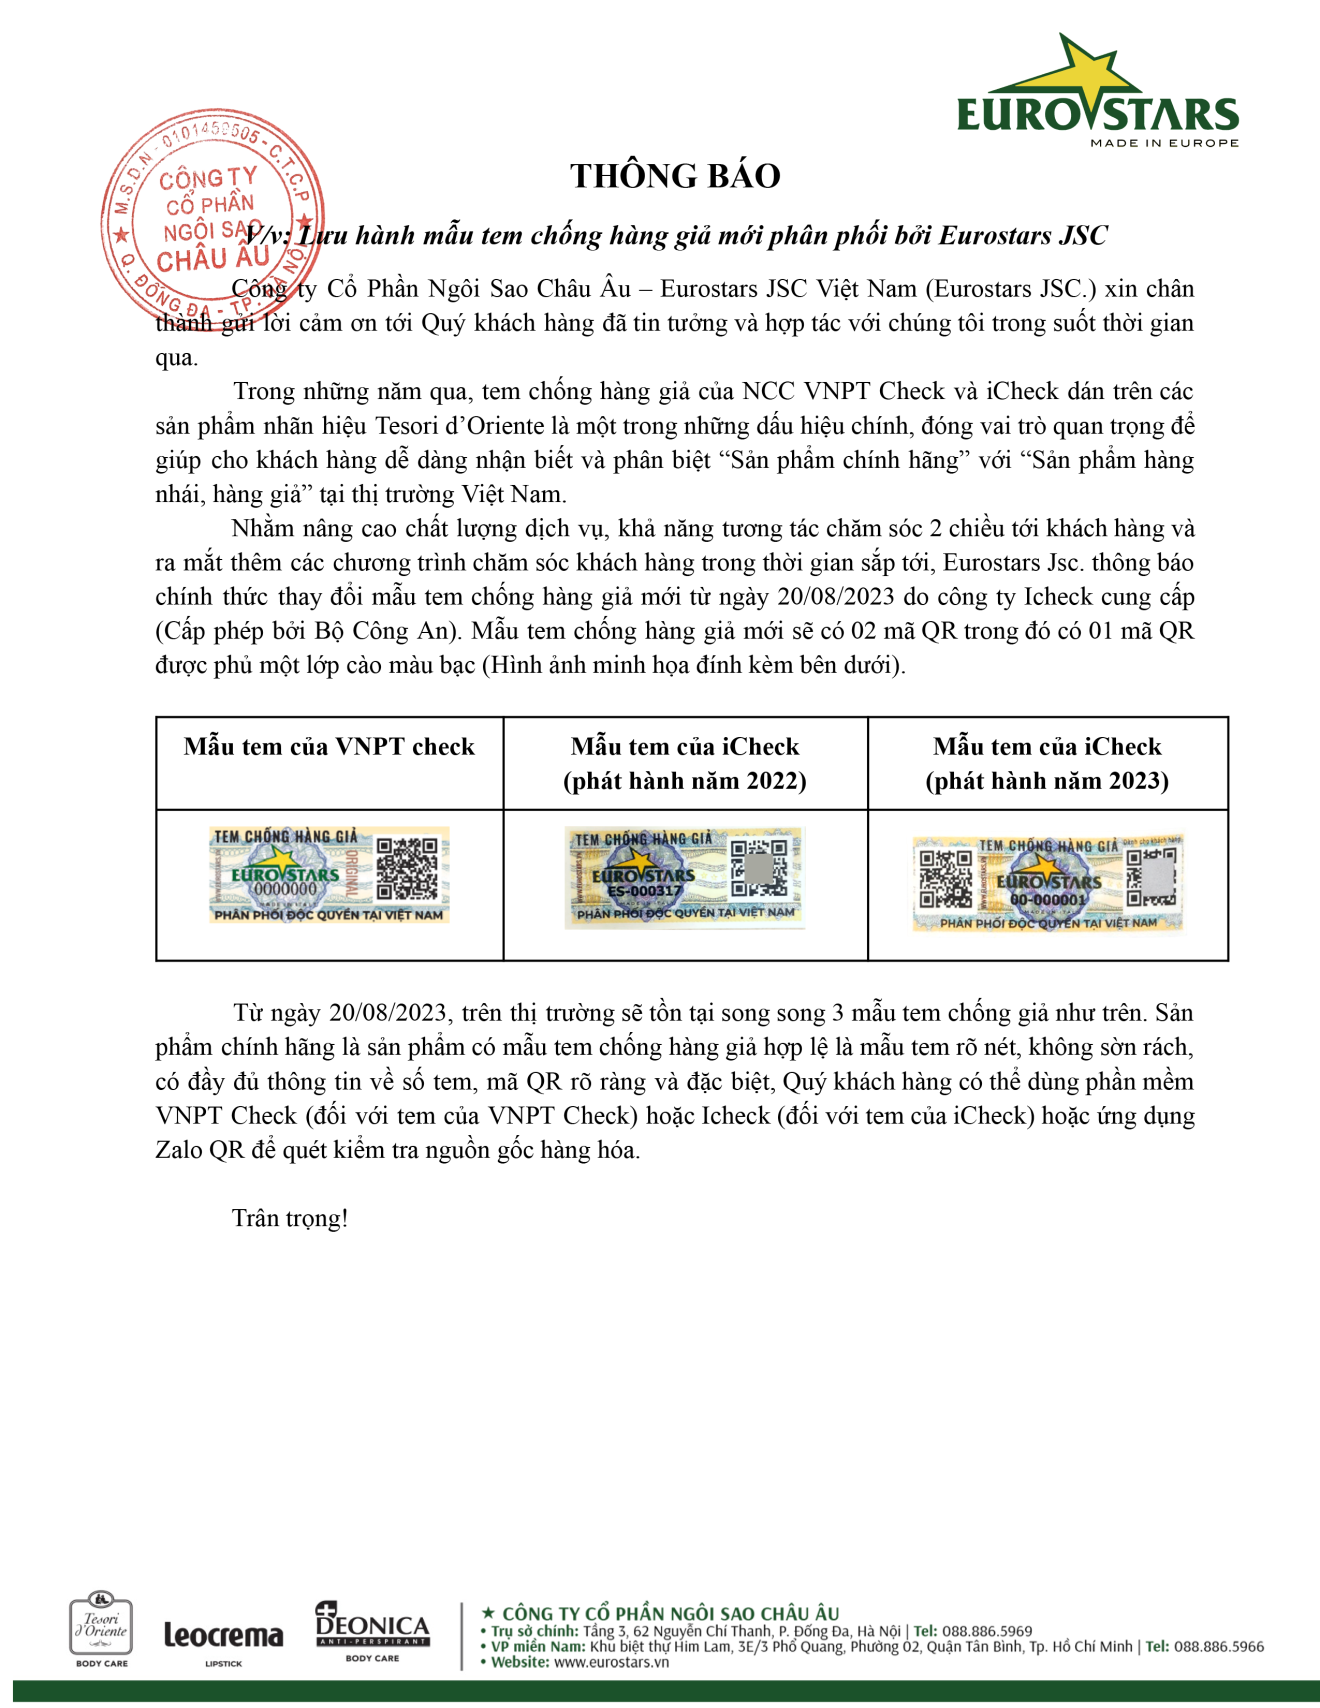 Văn bản thông báo: Lưu hành thêm mẫu tem chống hàng giả trên sản phẩm Tesori d’Oriente phân phối bởi Eurostars JSC.